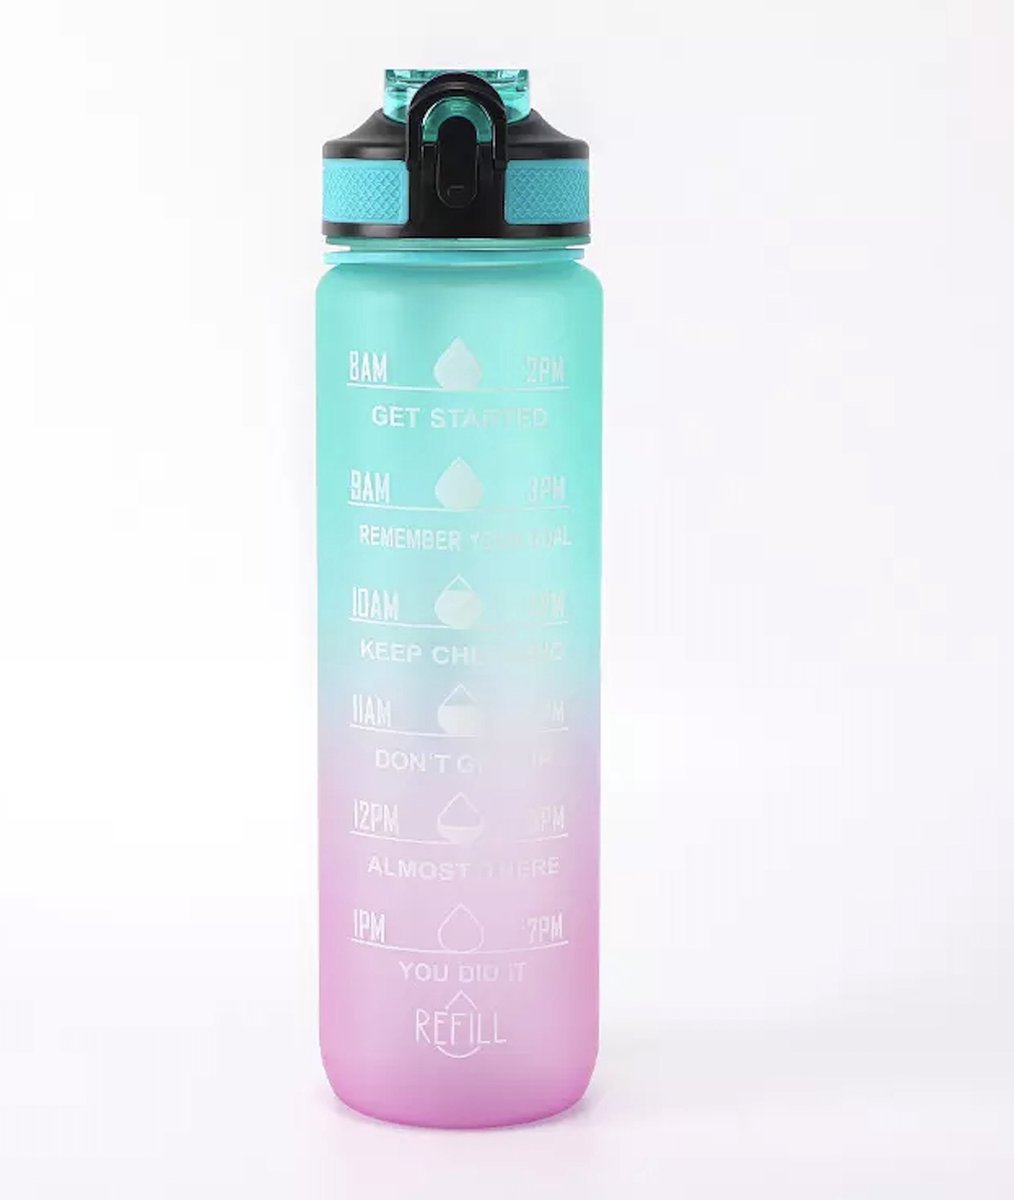 Afecto motivatie drinkfles grijs - Waterfles plus Tijdmarkeringen - Drinkfles - 1 Liter - BPA vrij - cyaan- paars - hoeveel drink jij?